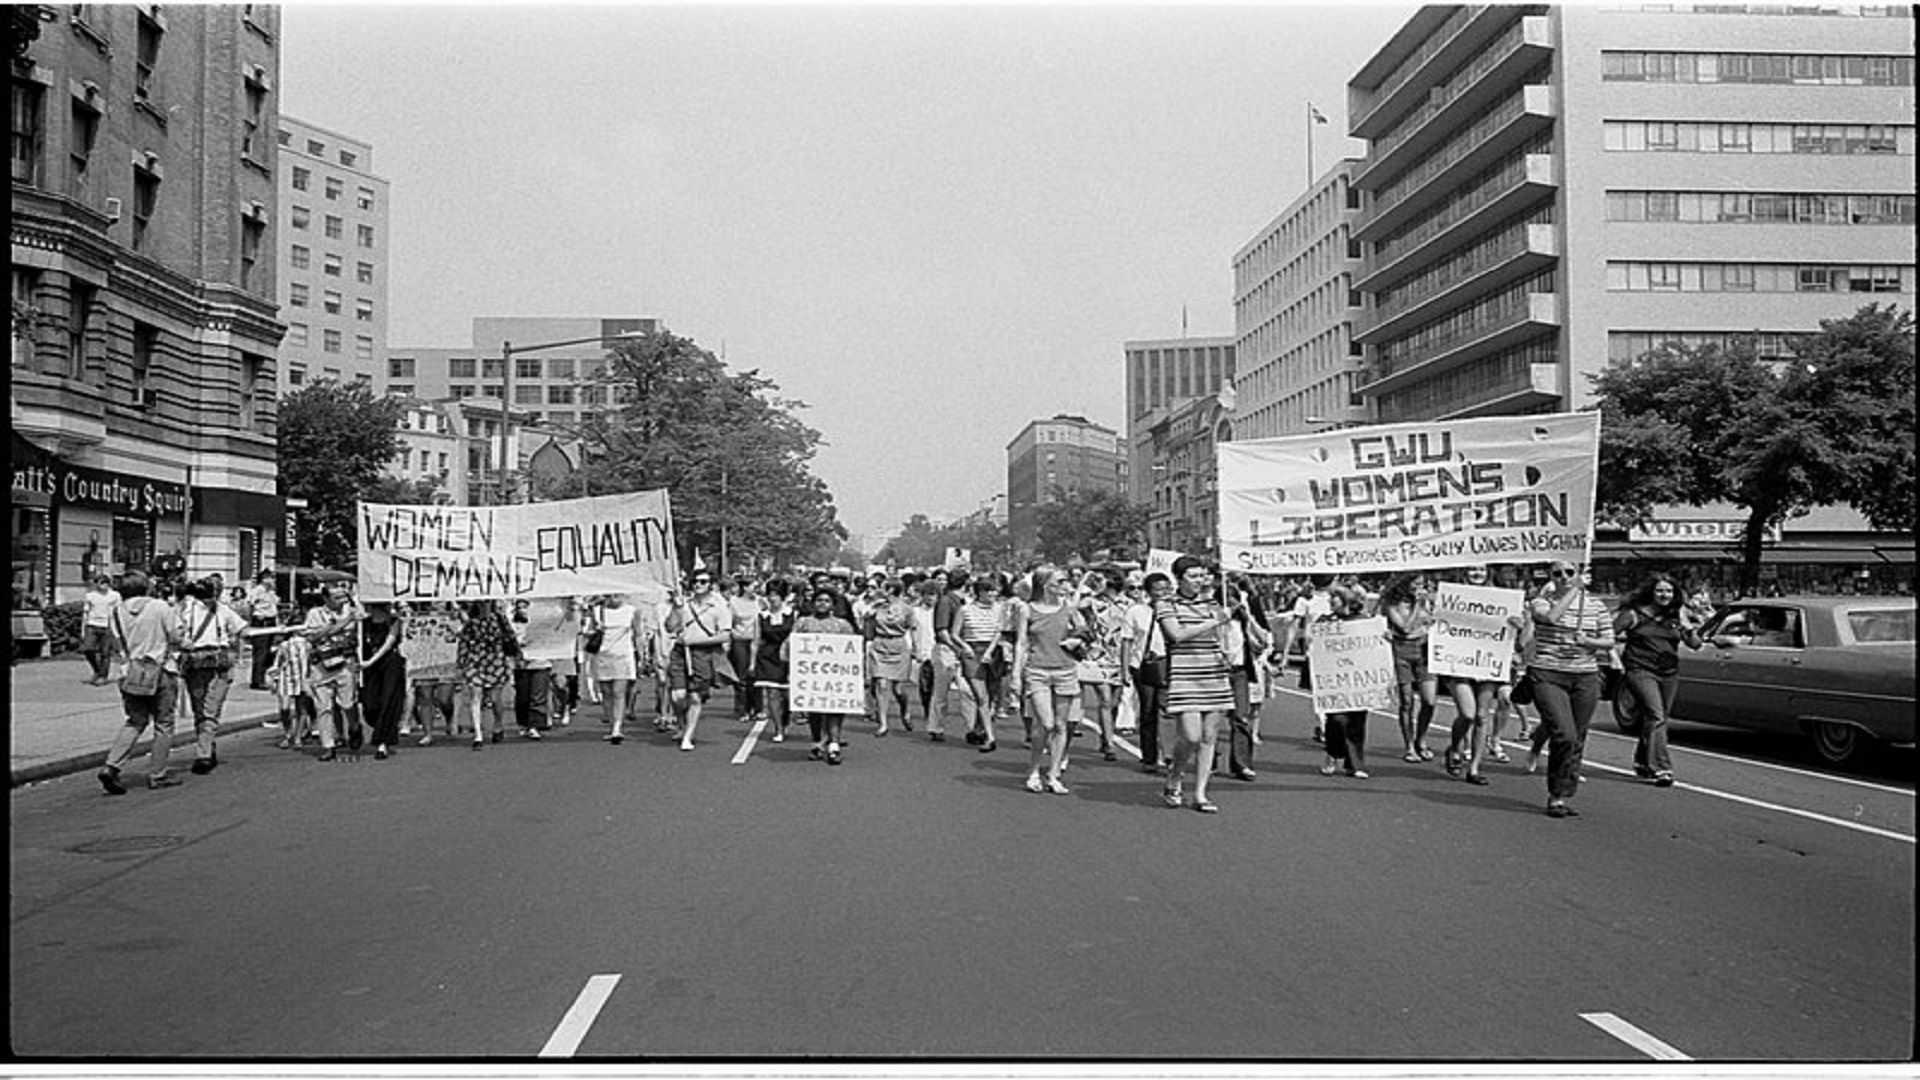 ضفة ثالثة /مسيرة تحرير المرأة في واشنطن العاصمة، 1970